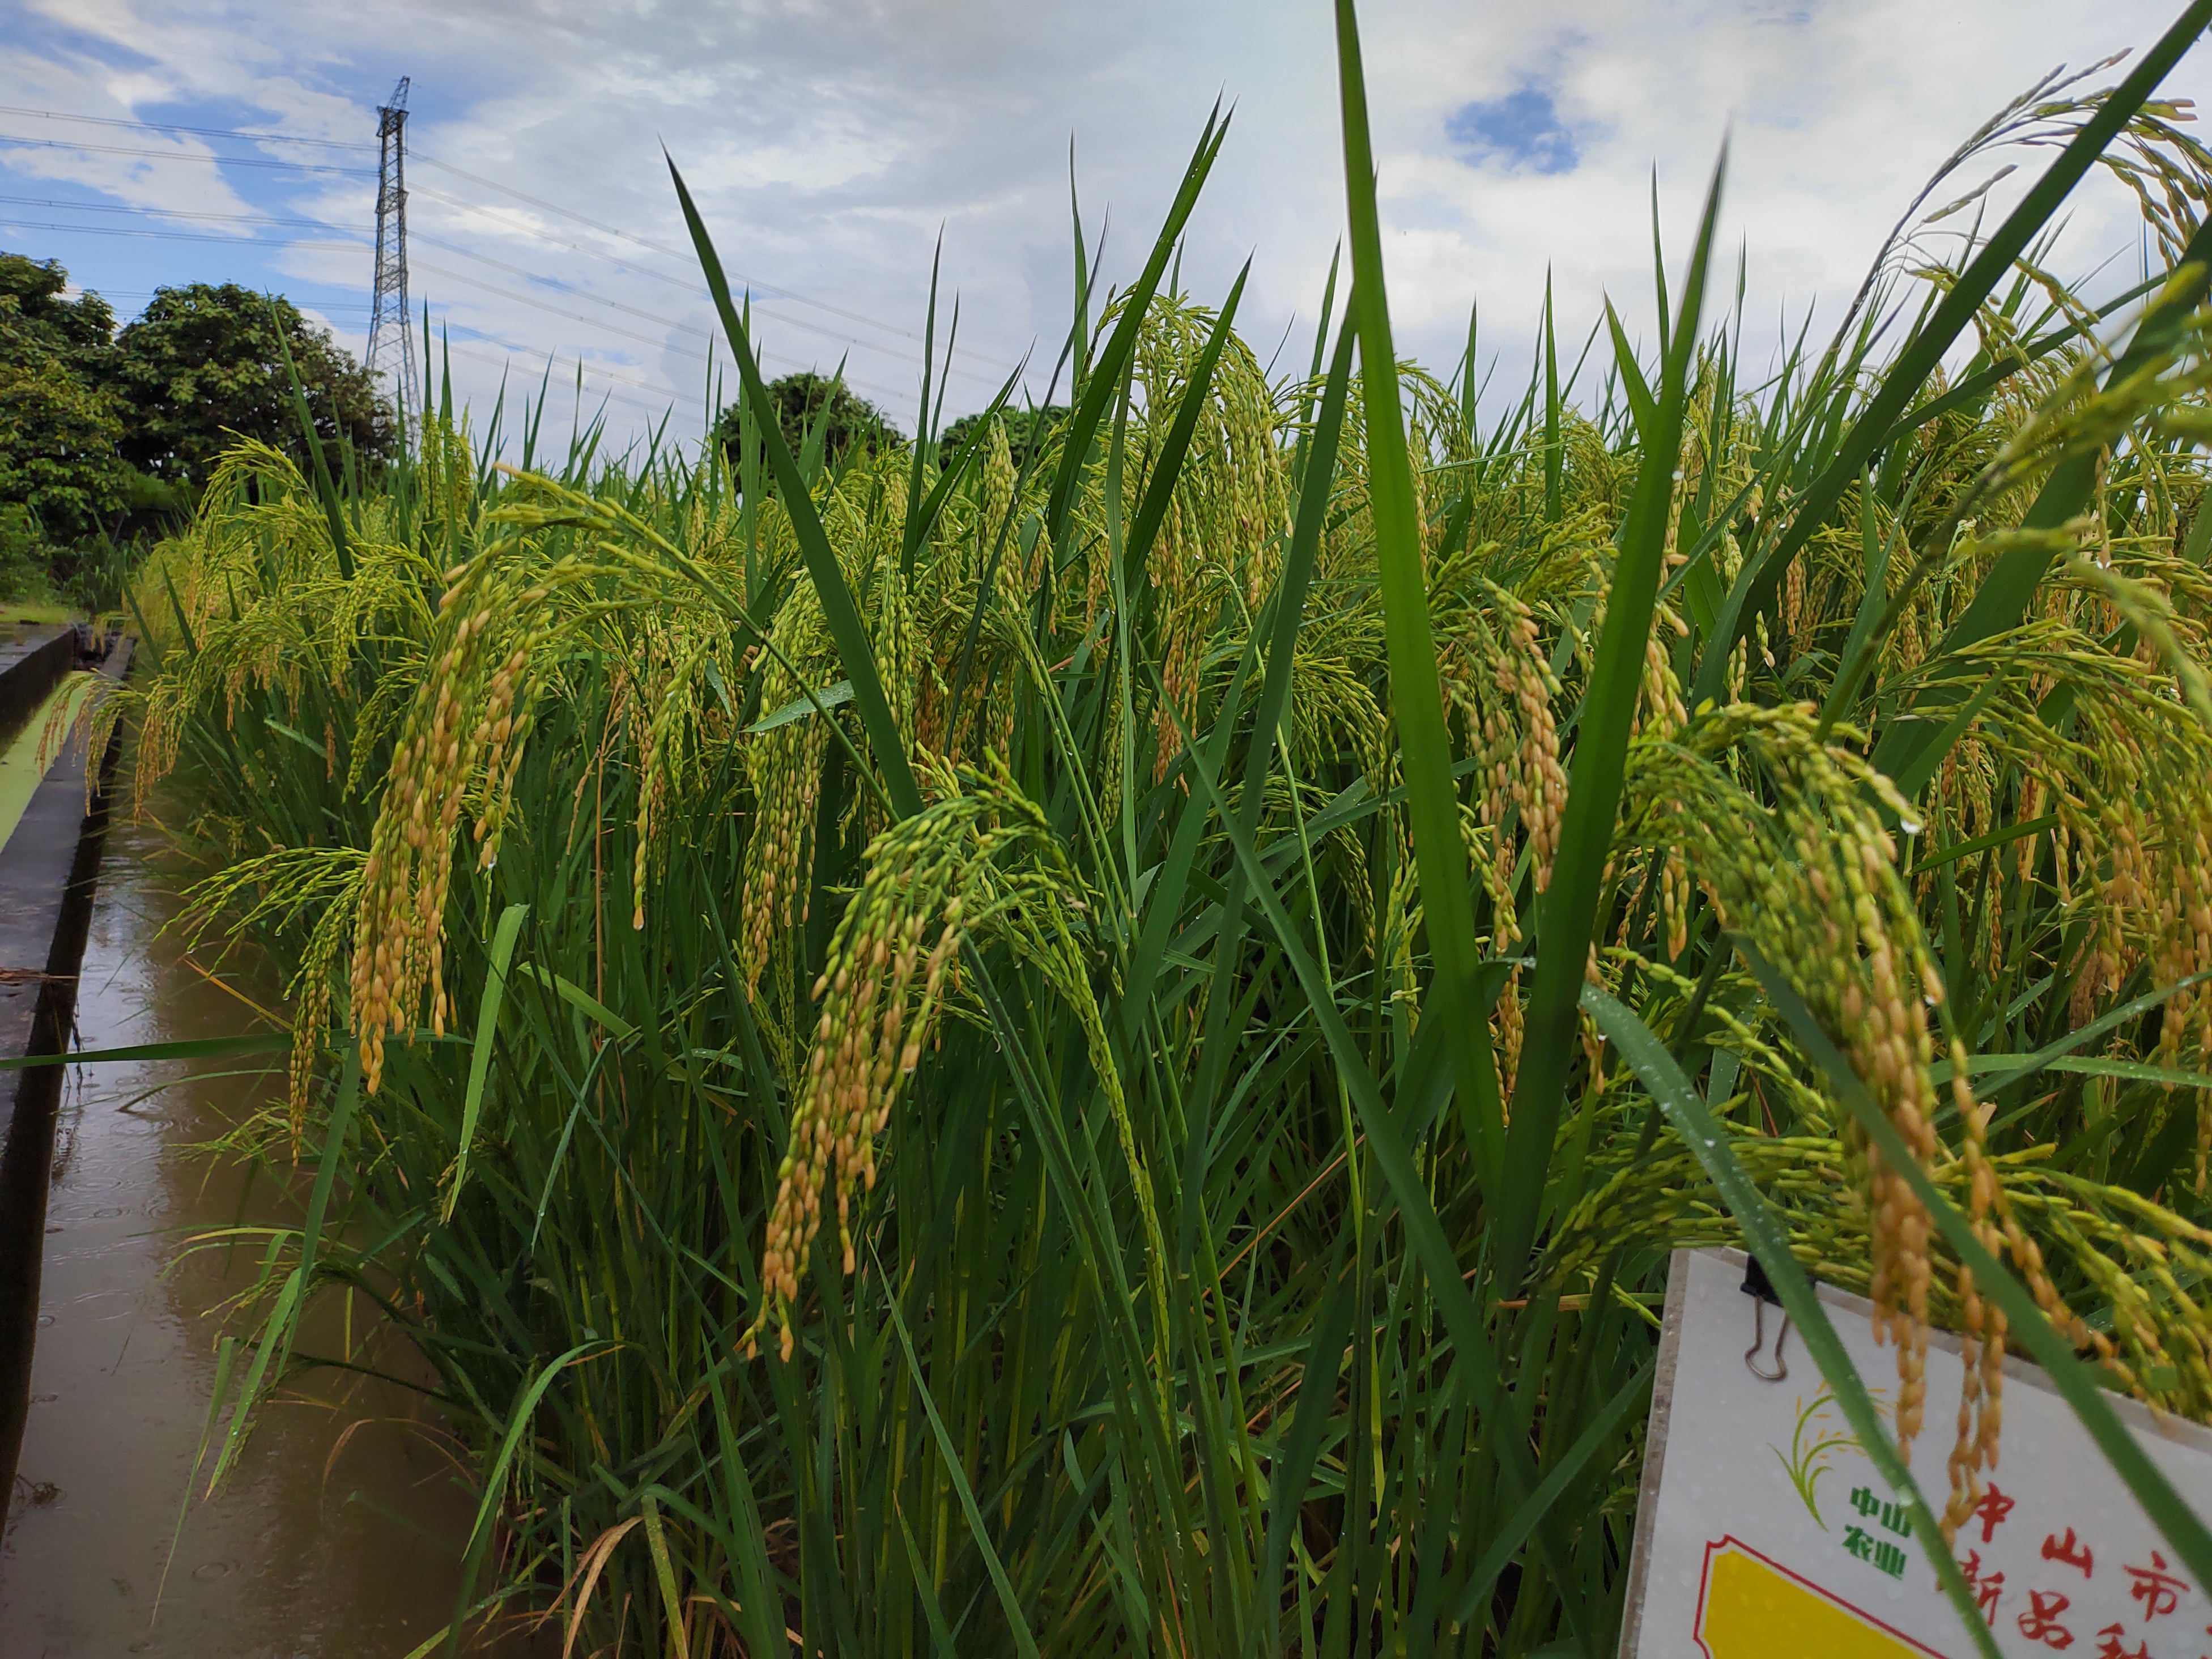 视频株高18米以上中山首次试种巨型稻